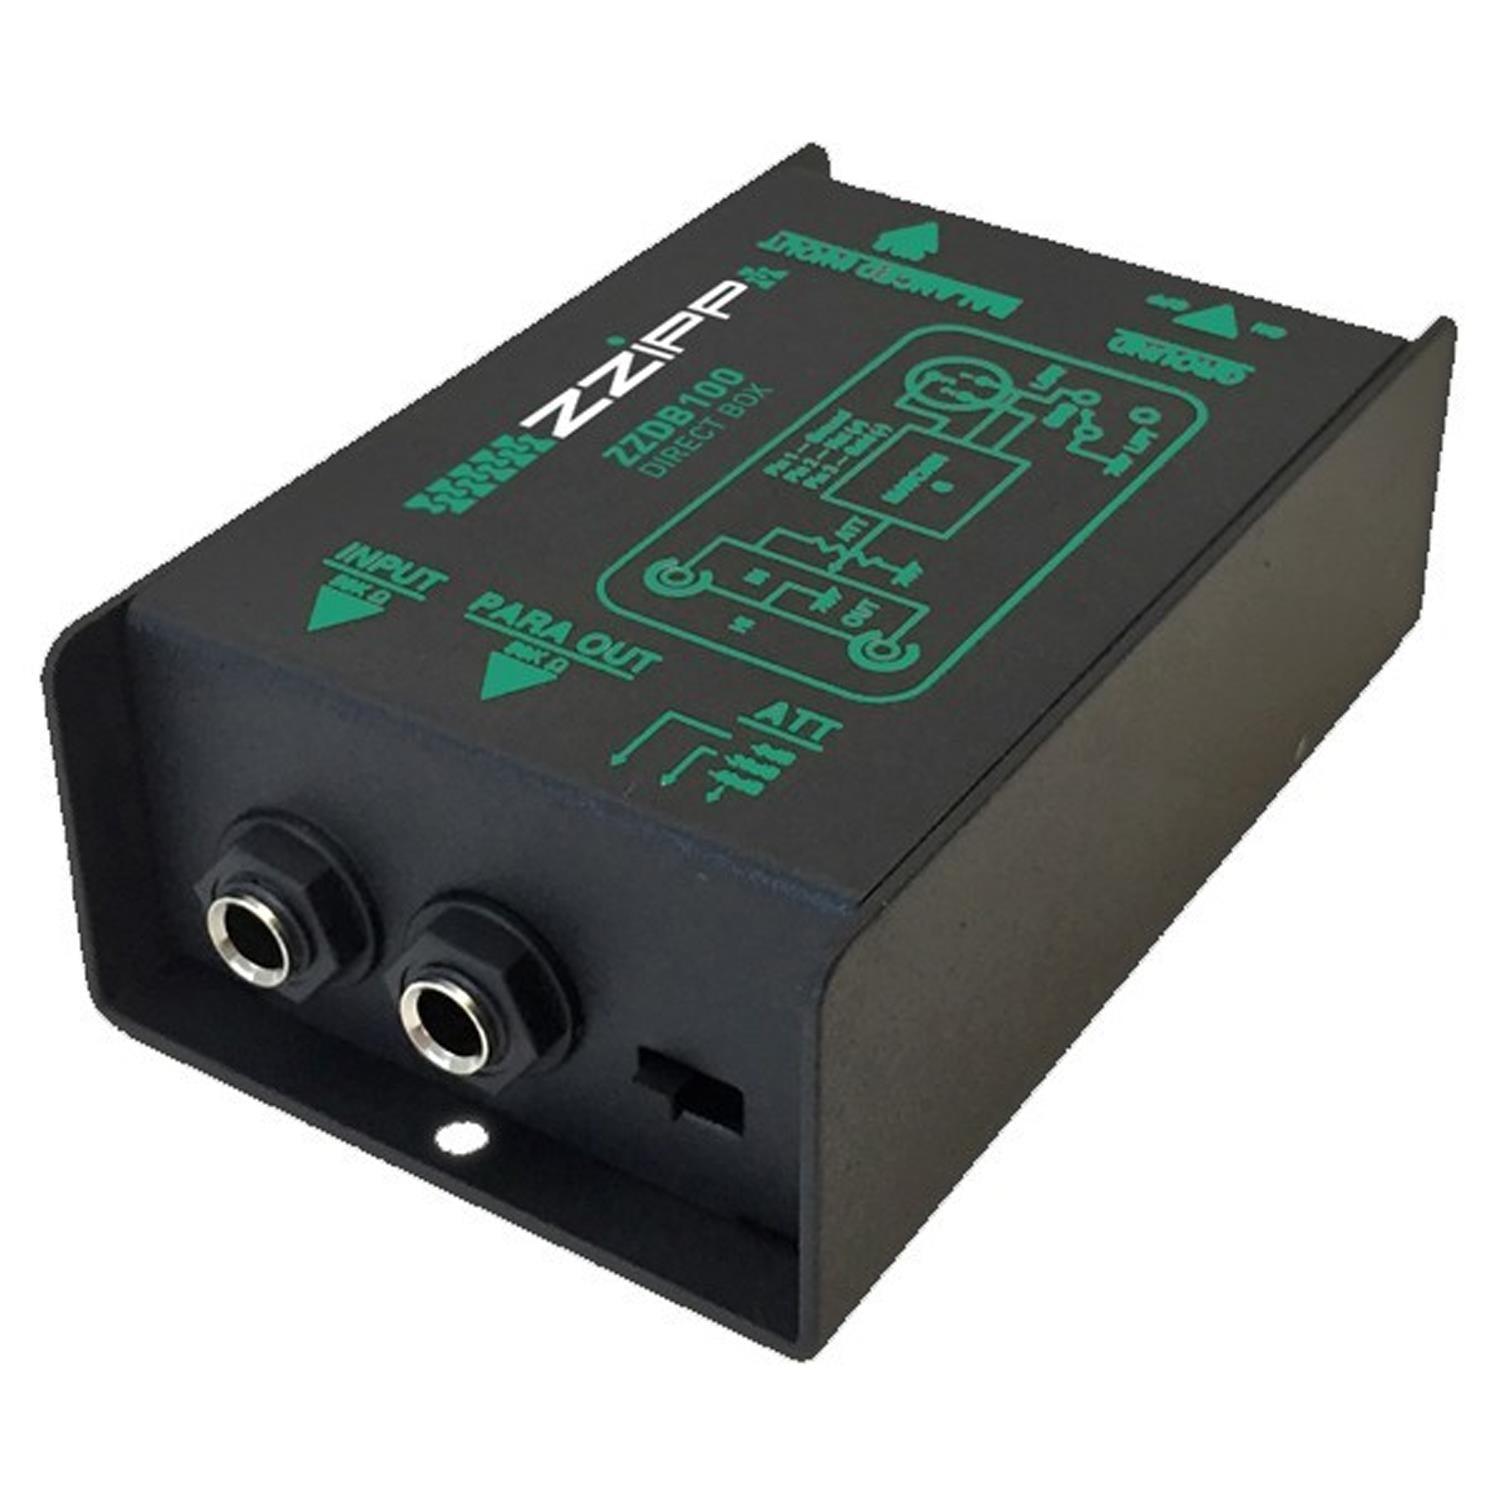 ZZiPP 1 Channel Passive DI Box - DY Pro Audio